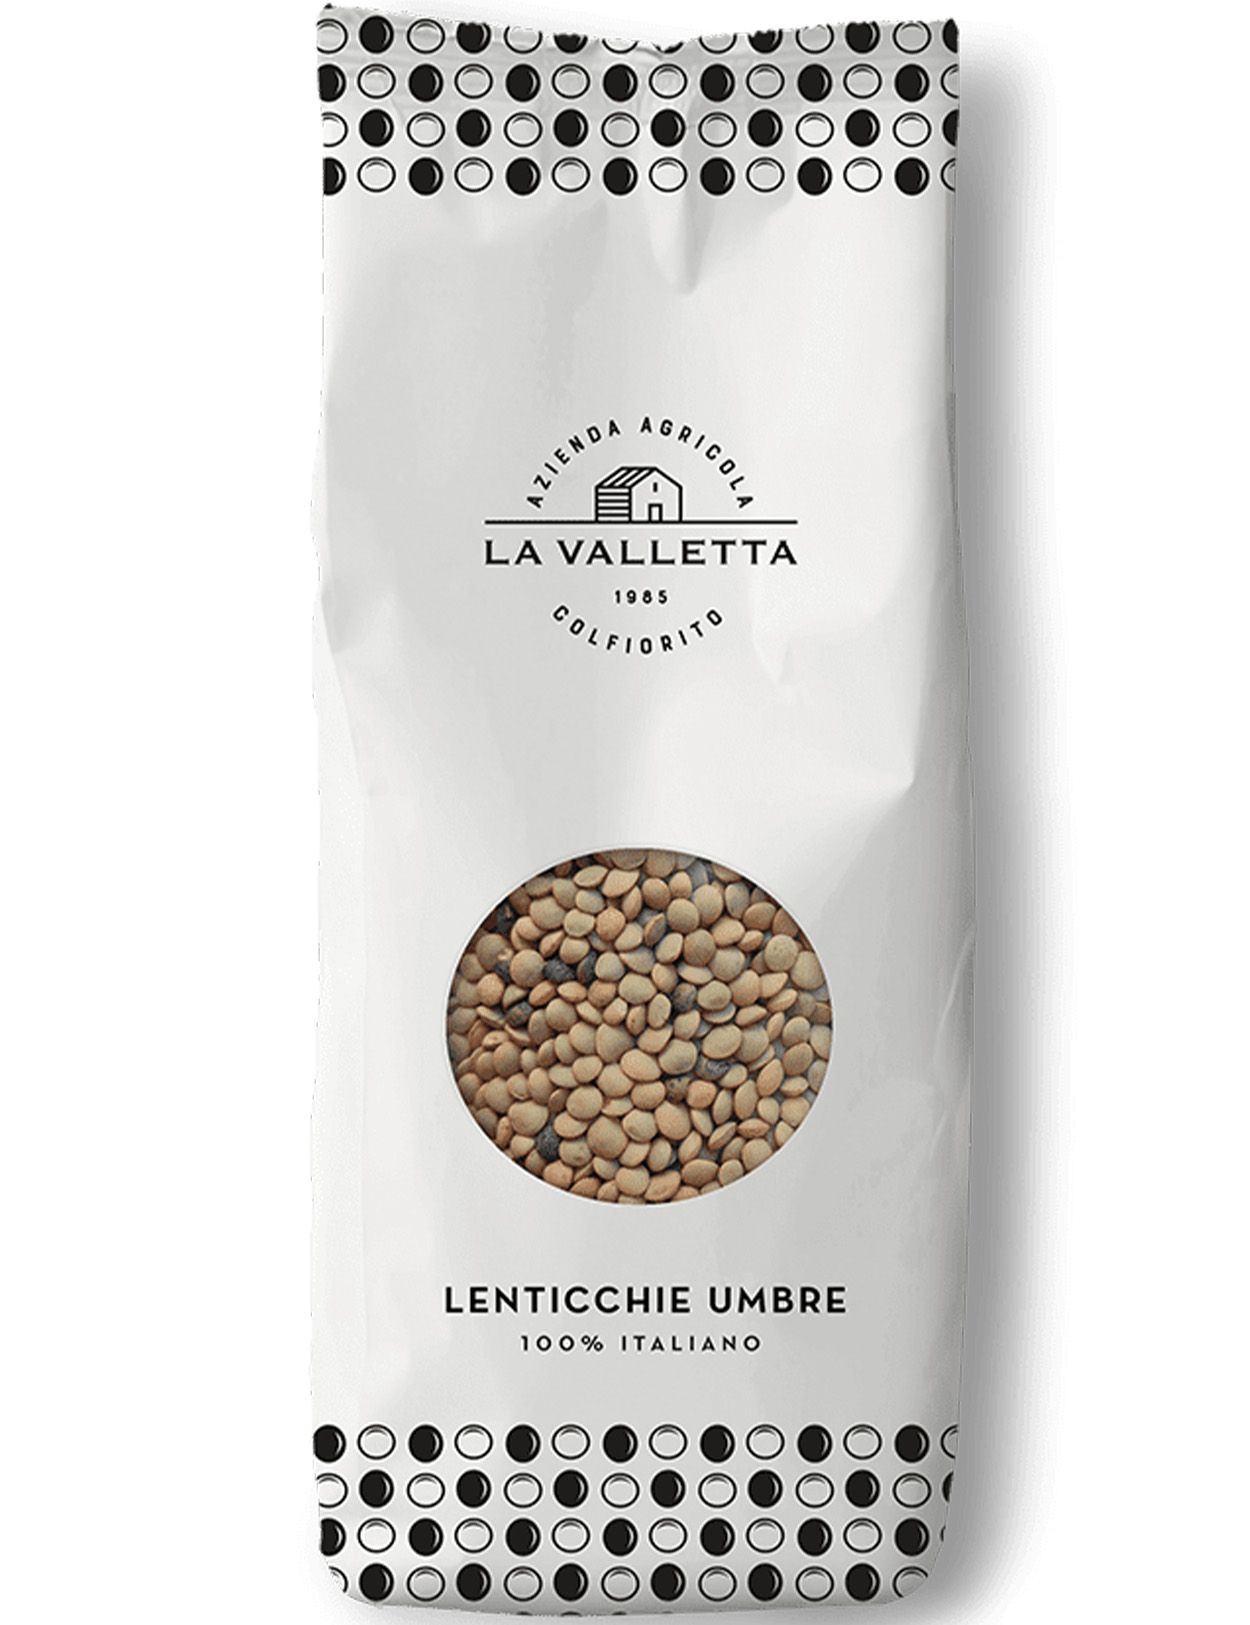 Lenticchie Umbre - Umbrian Lentils